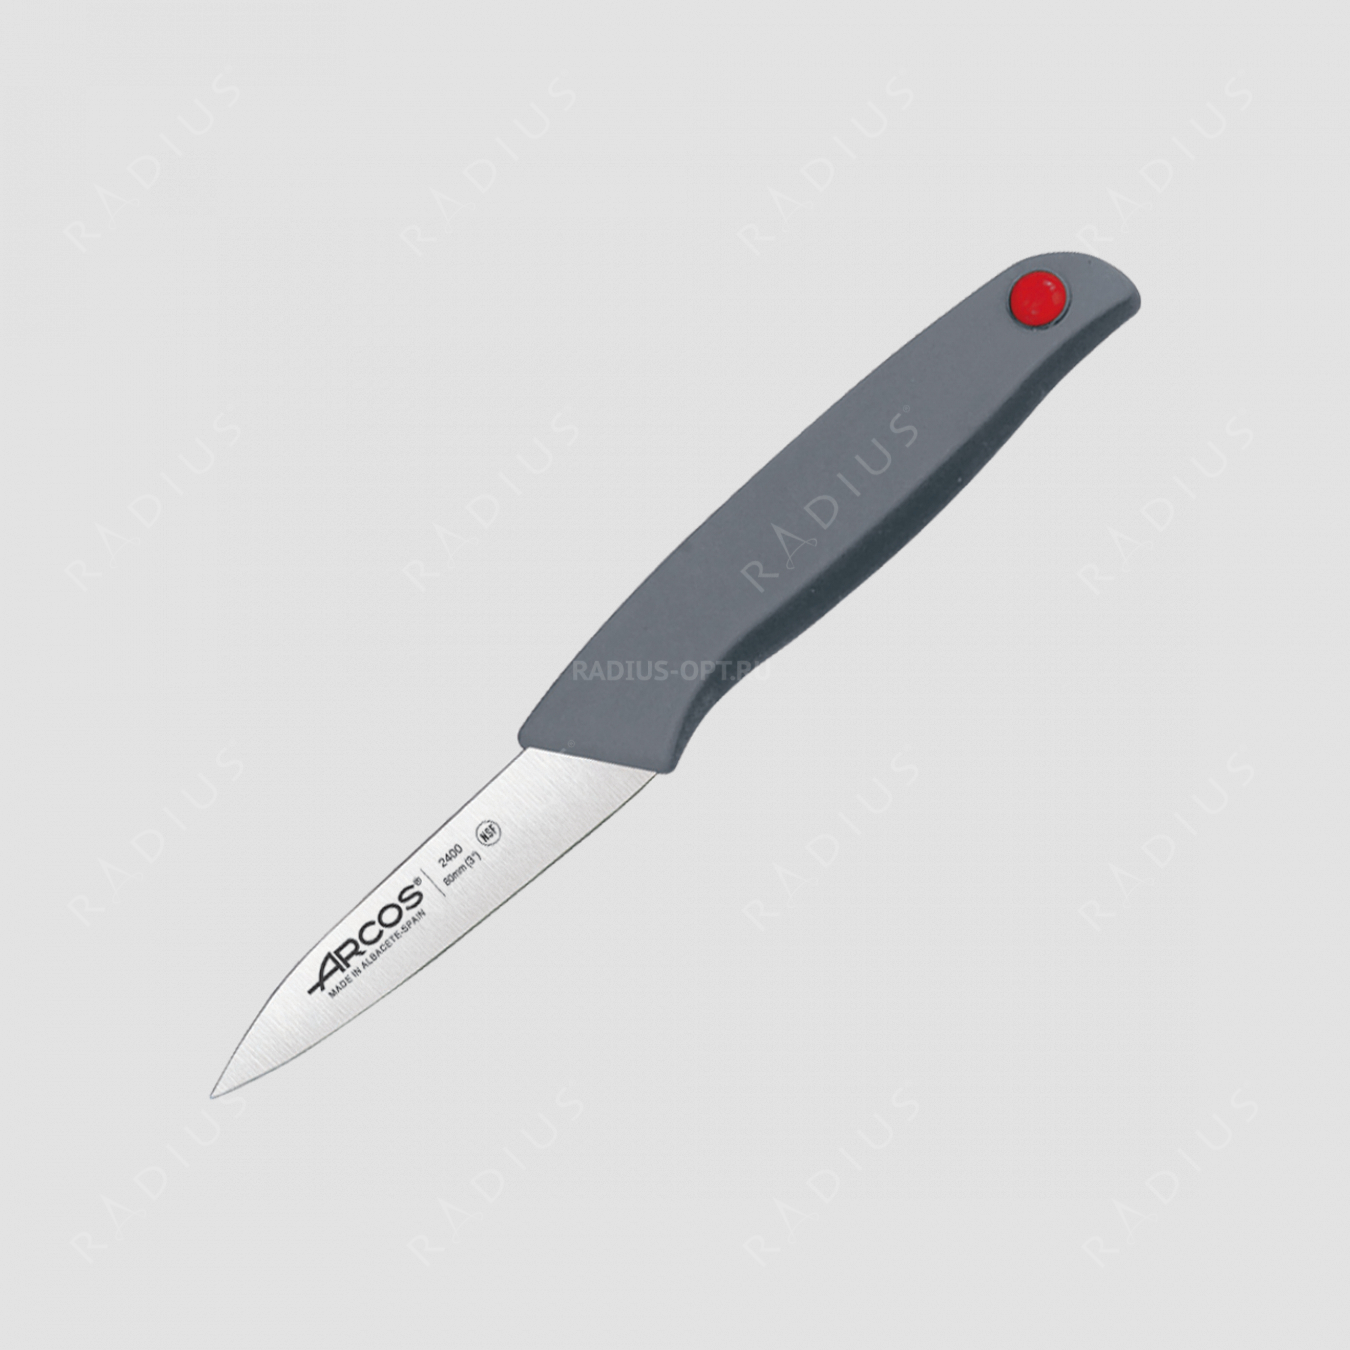 Нож кухонный для чистки овощей и фруктов 8 см, серия Colour-prof, ARCOS, Испания